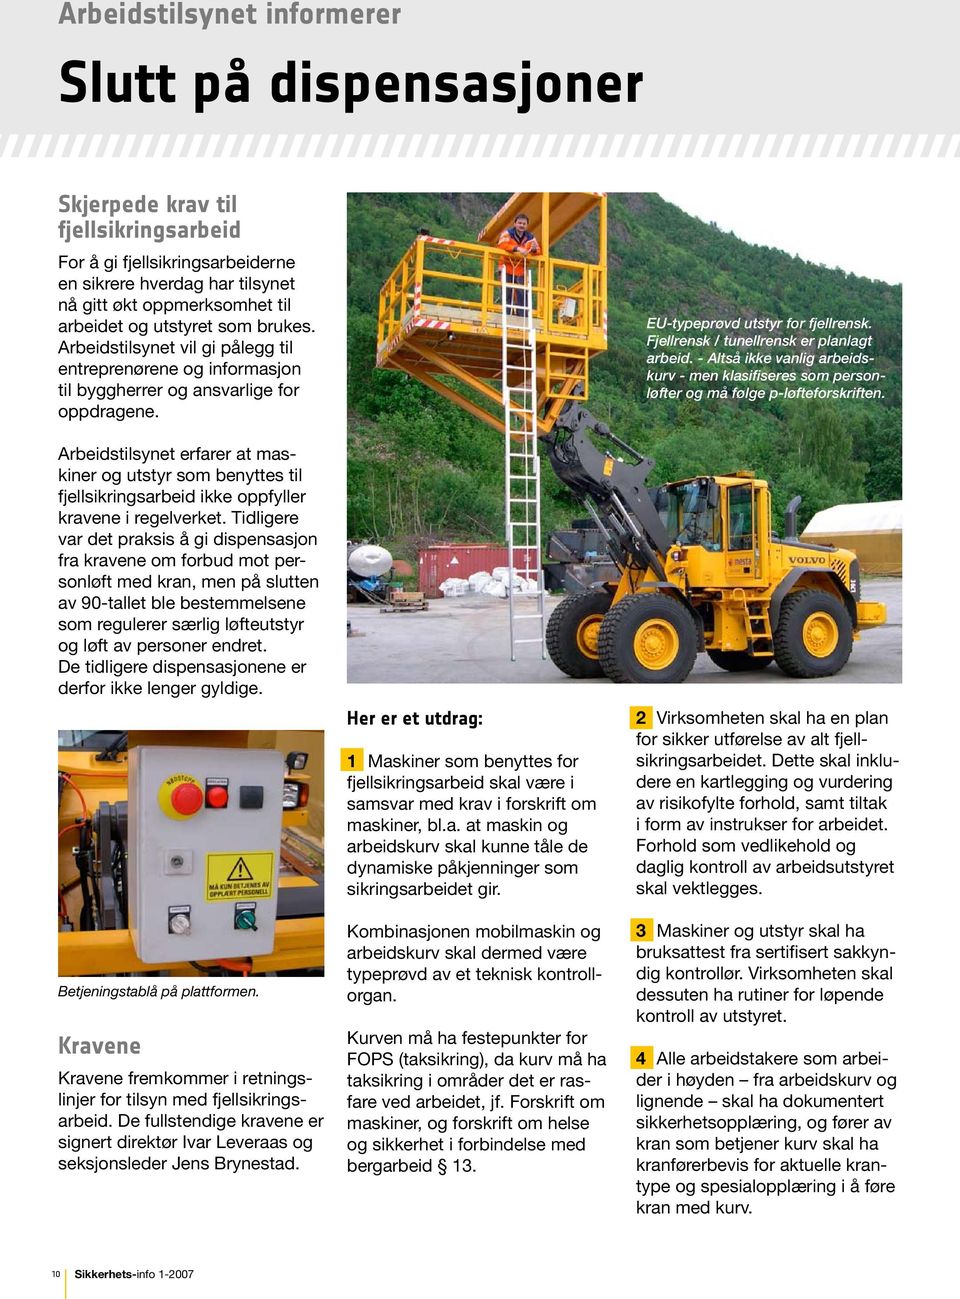 Arbeidstilsynet erfarer at maskiner og utstyr som benyttes til fjellsikringsarbeid ikke oppfyller kravene i regelverket.